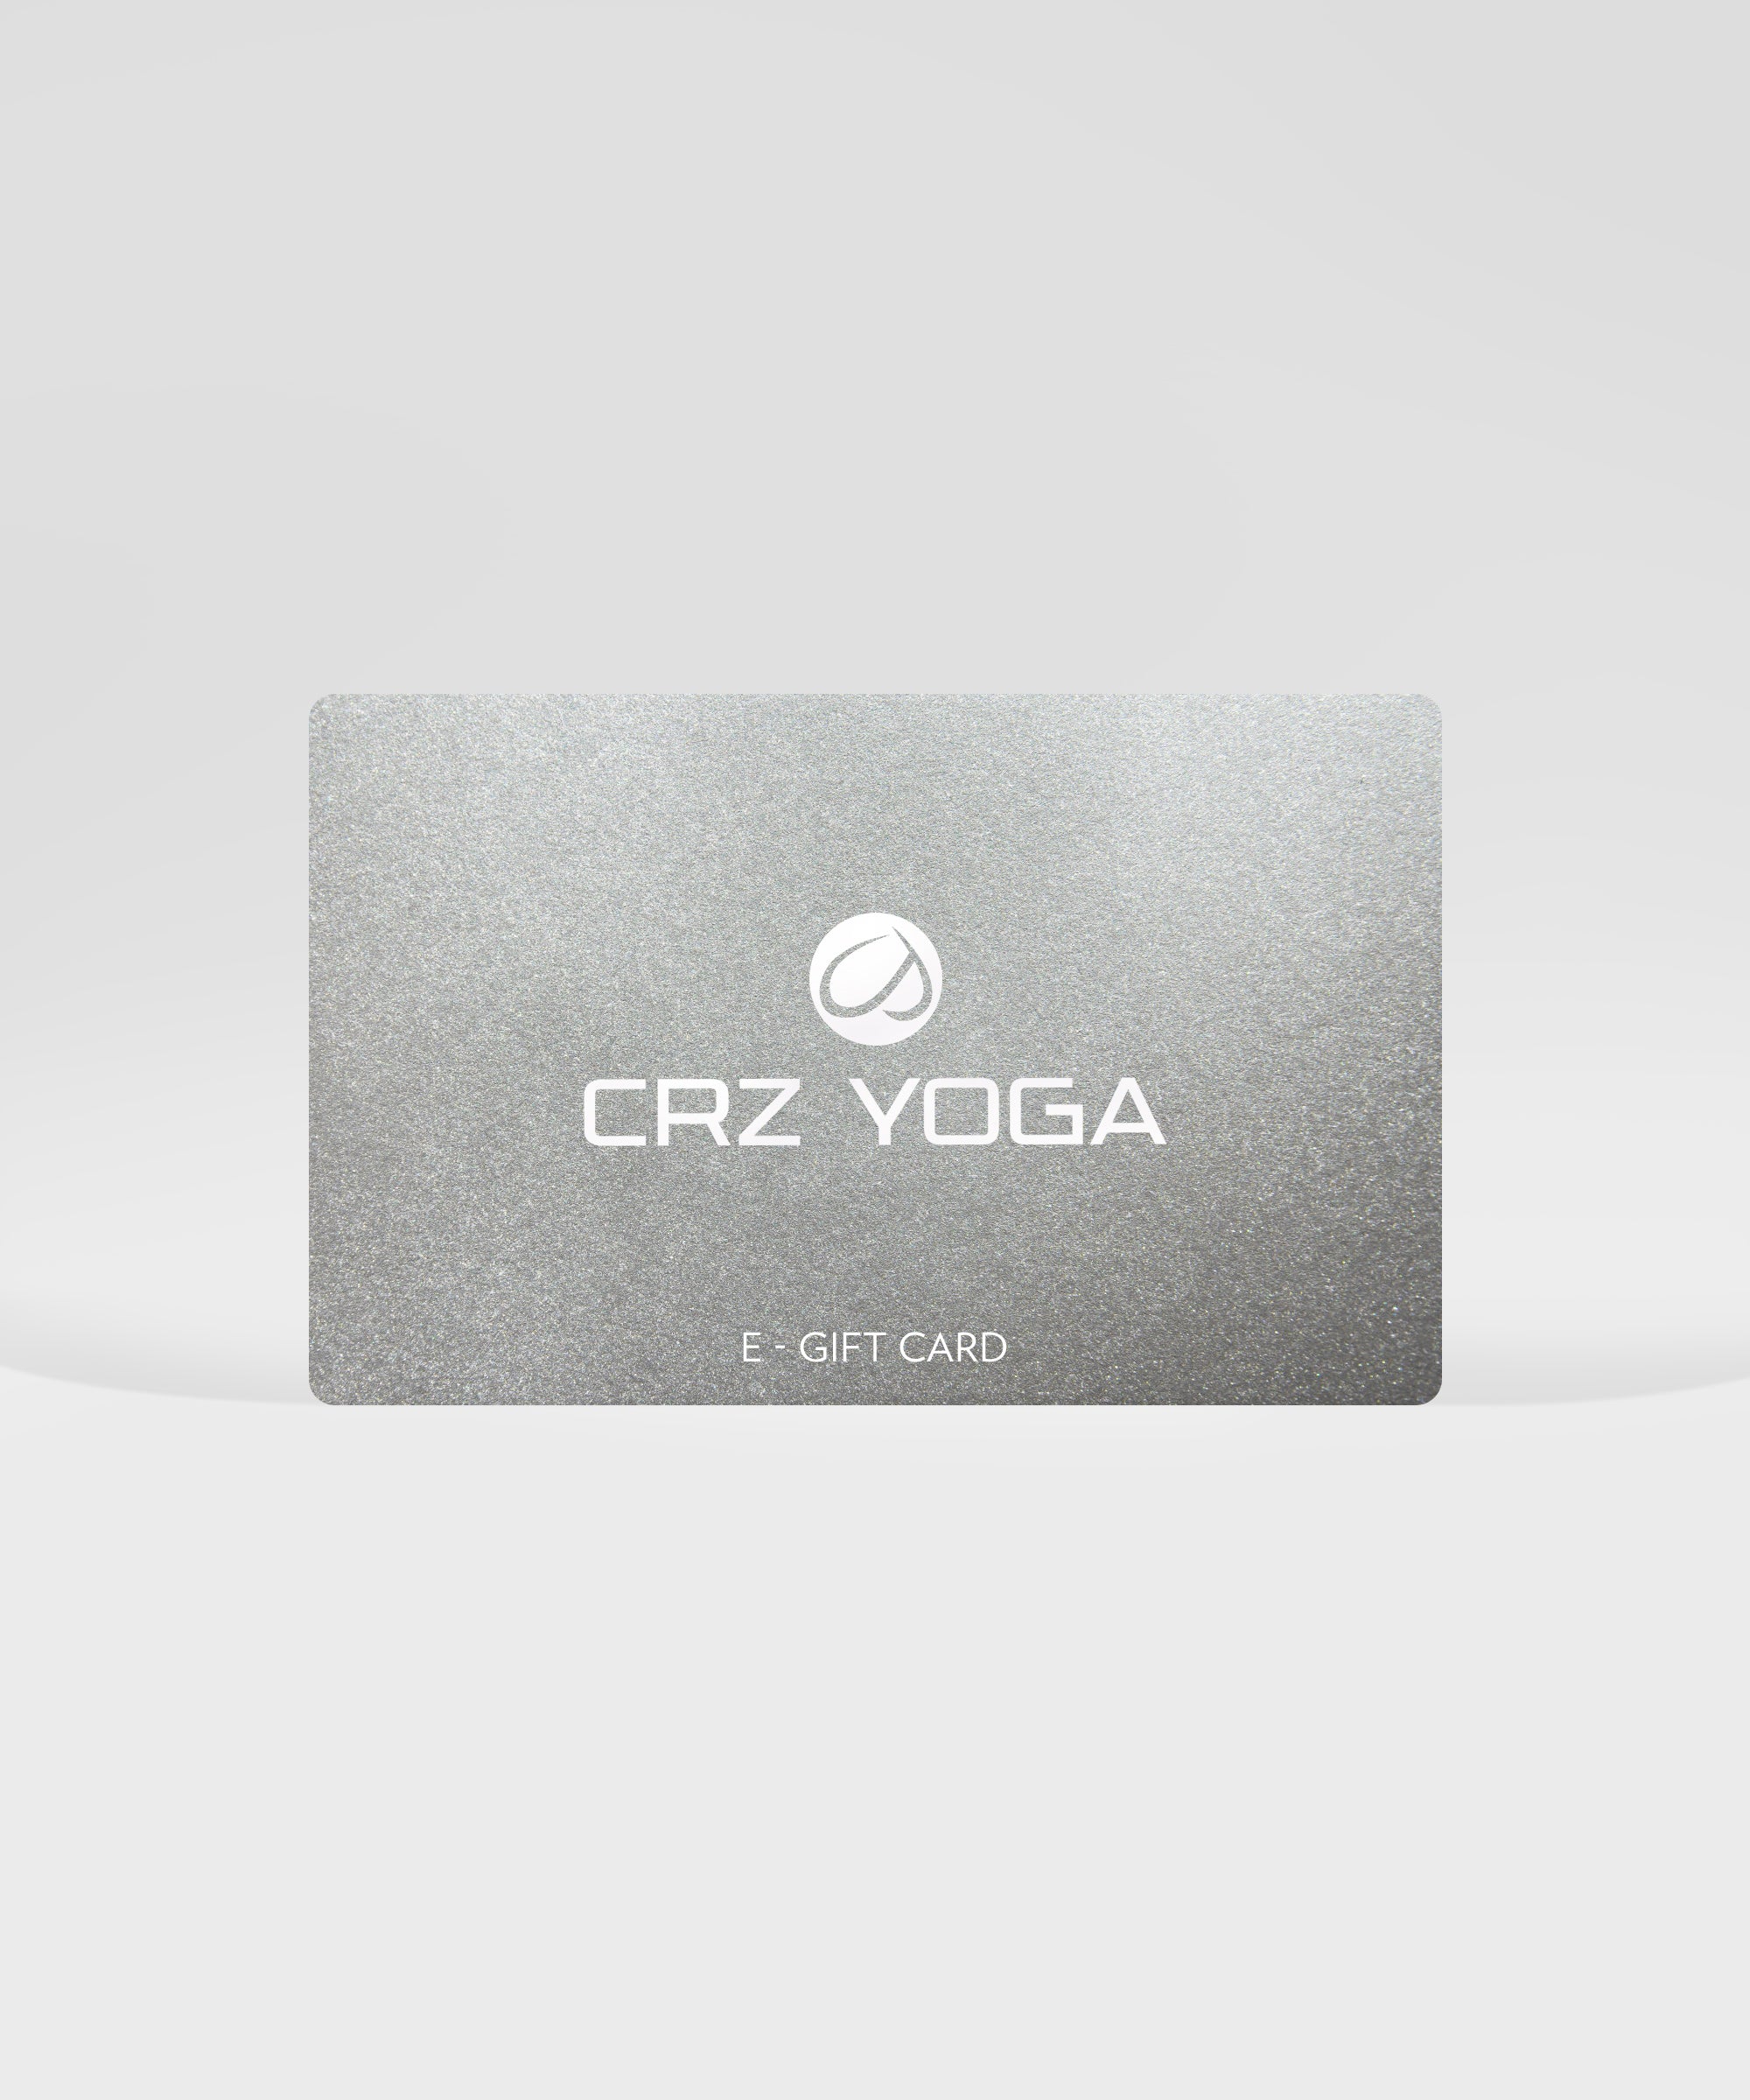 CRZ YOGA E-GIFT CARD